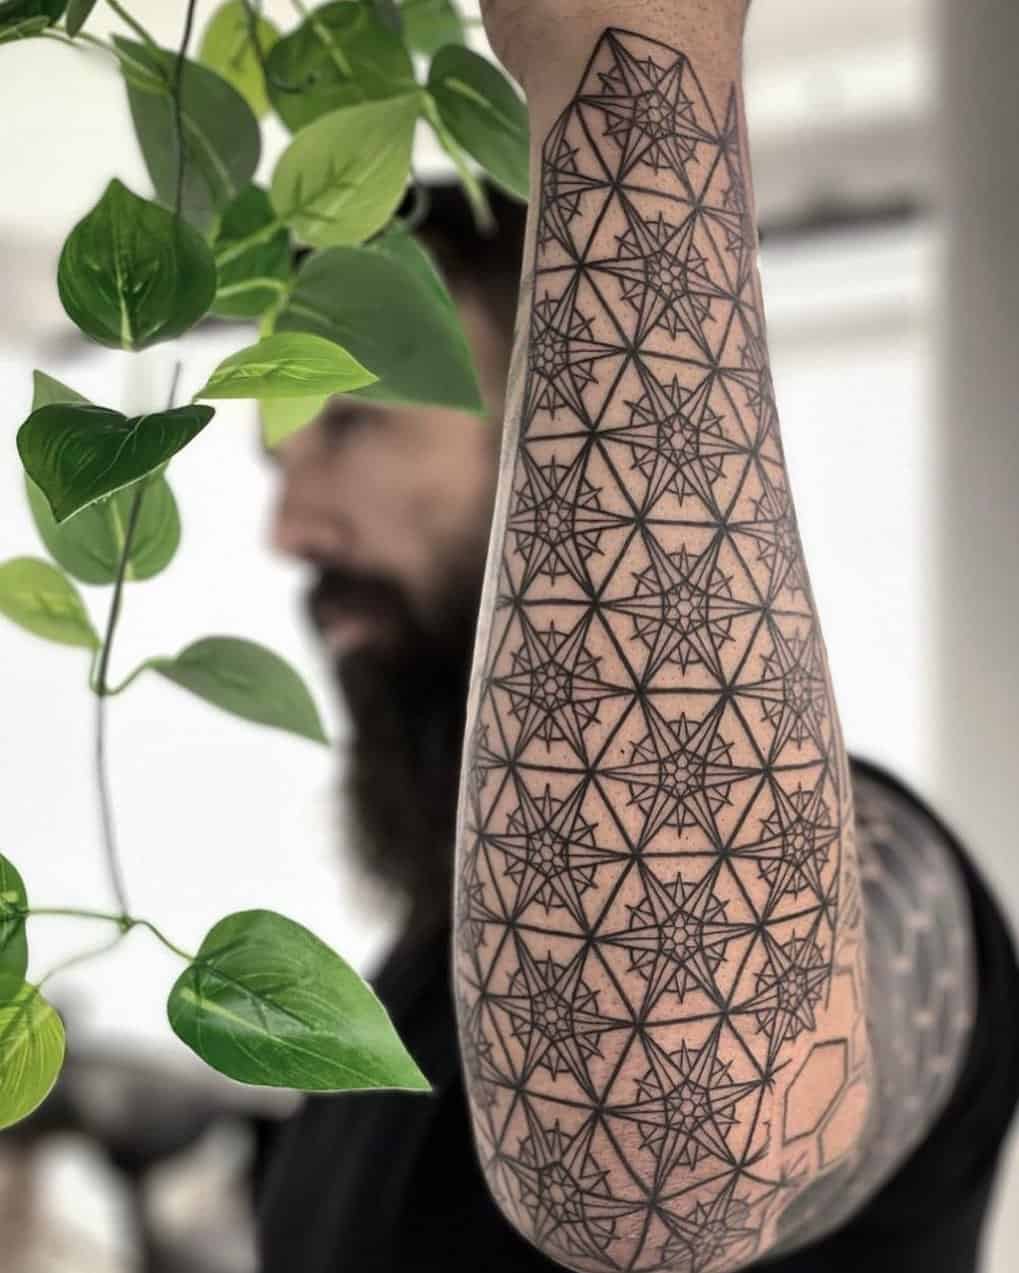 Mandala geometrci tattoo in lower arm by geometrip small